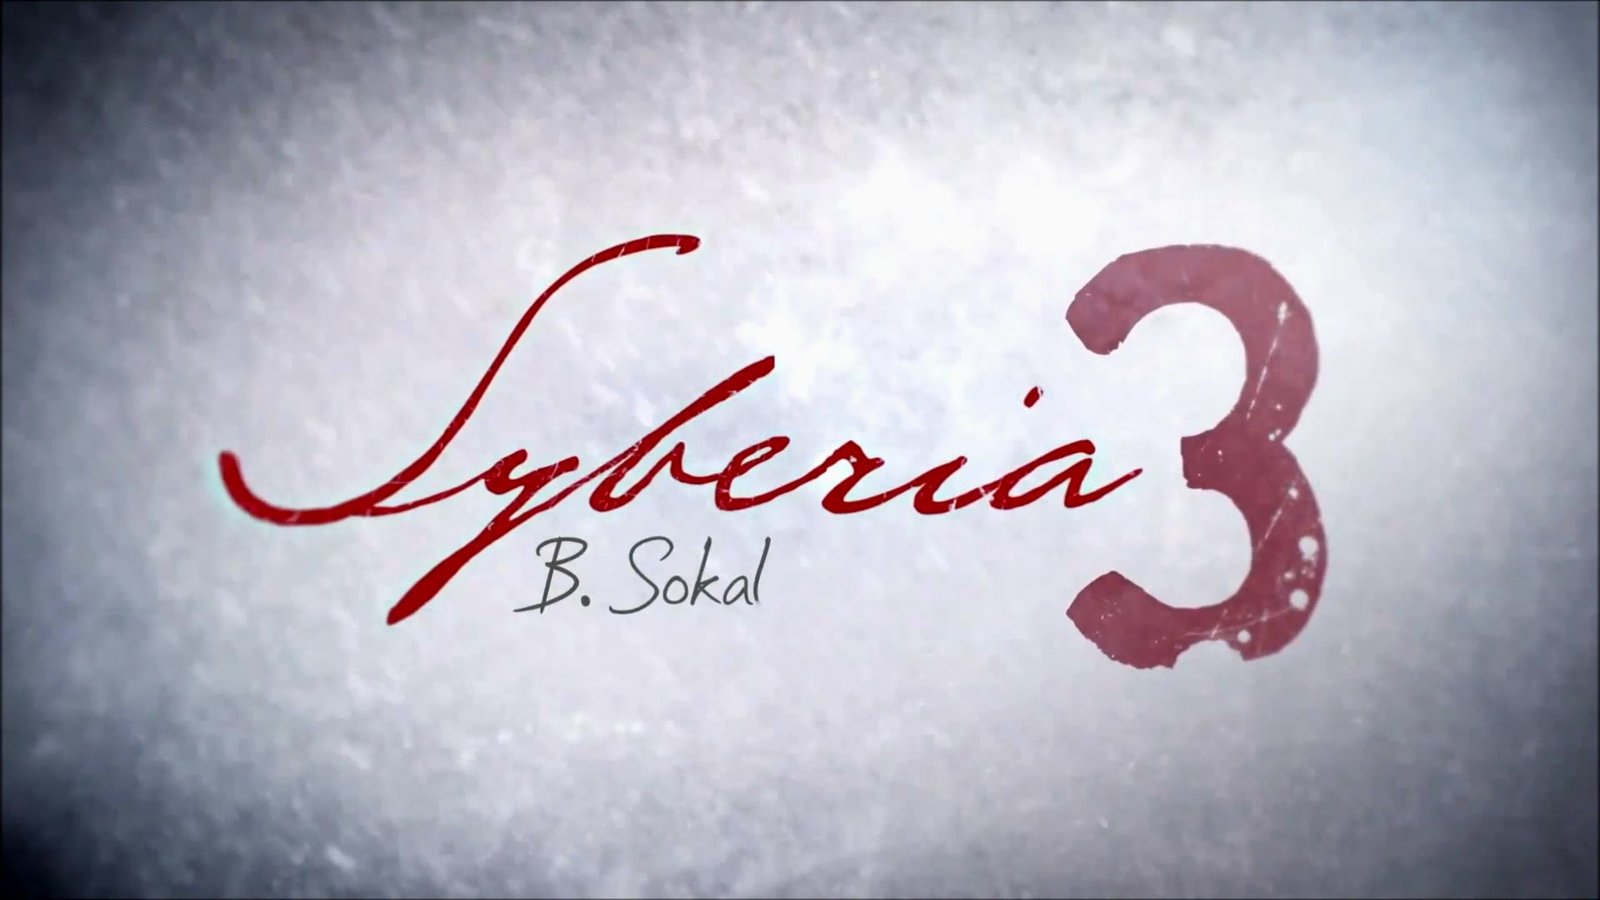 Syberia 3 - Deluxe Edition